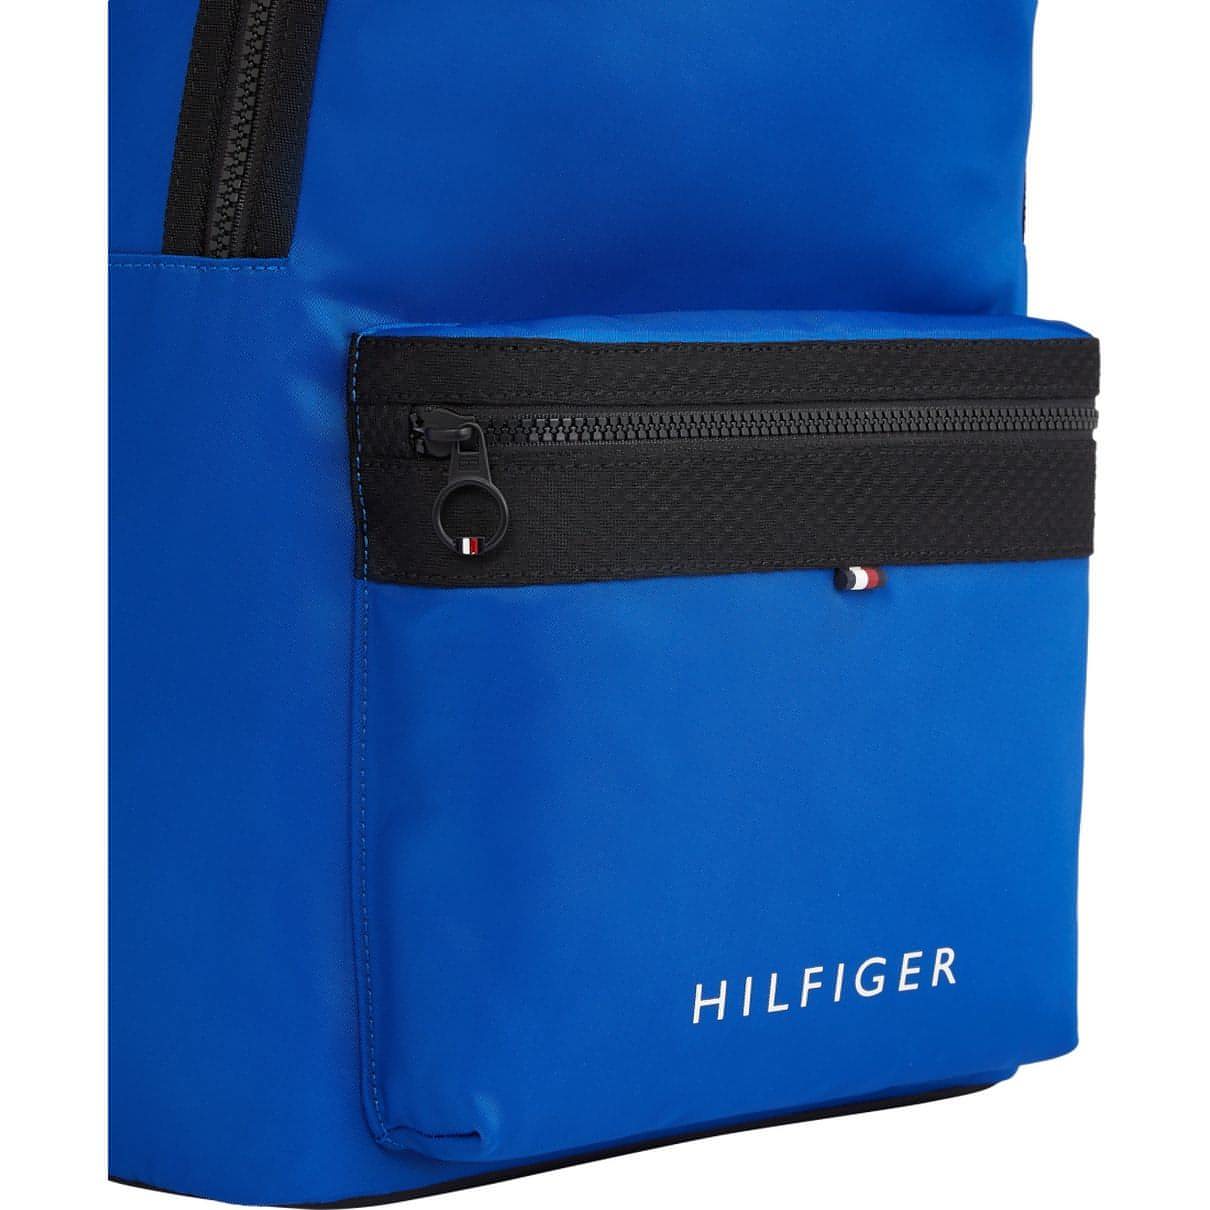 TOMMY HILFIGER vyriška mėlyna kuprinė Skyline backpack